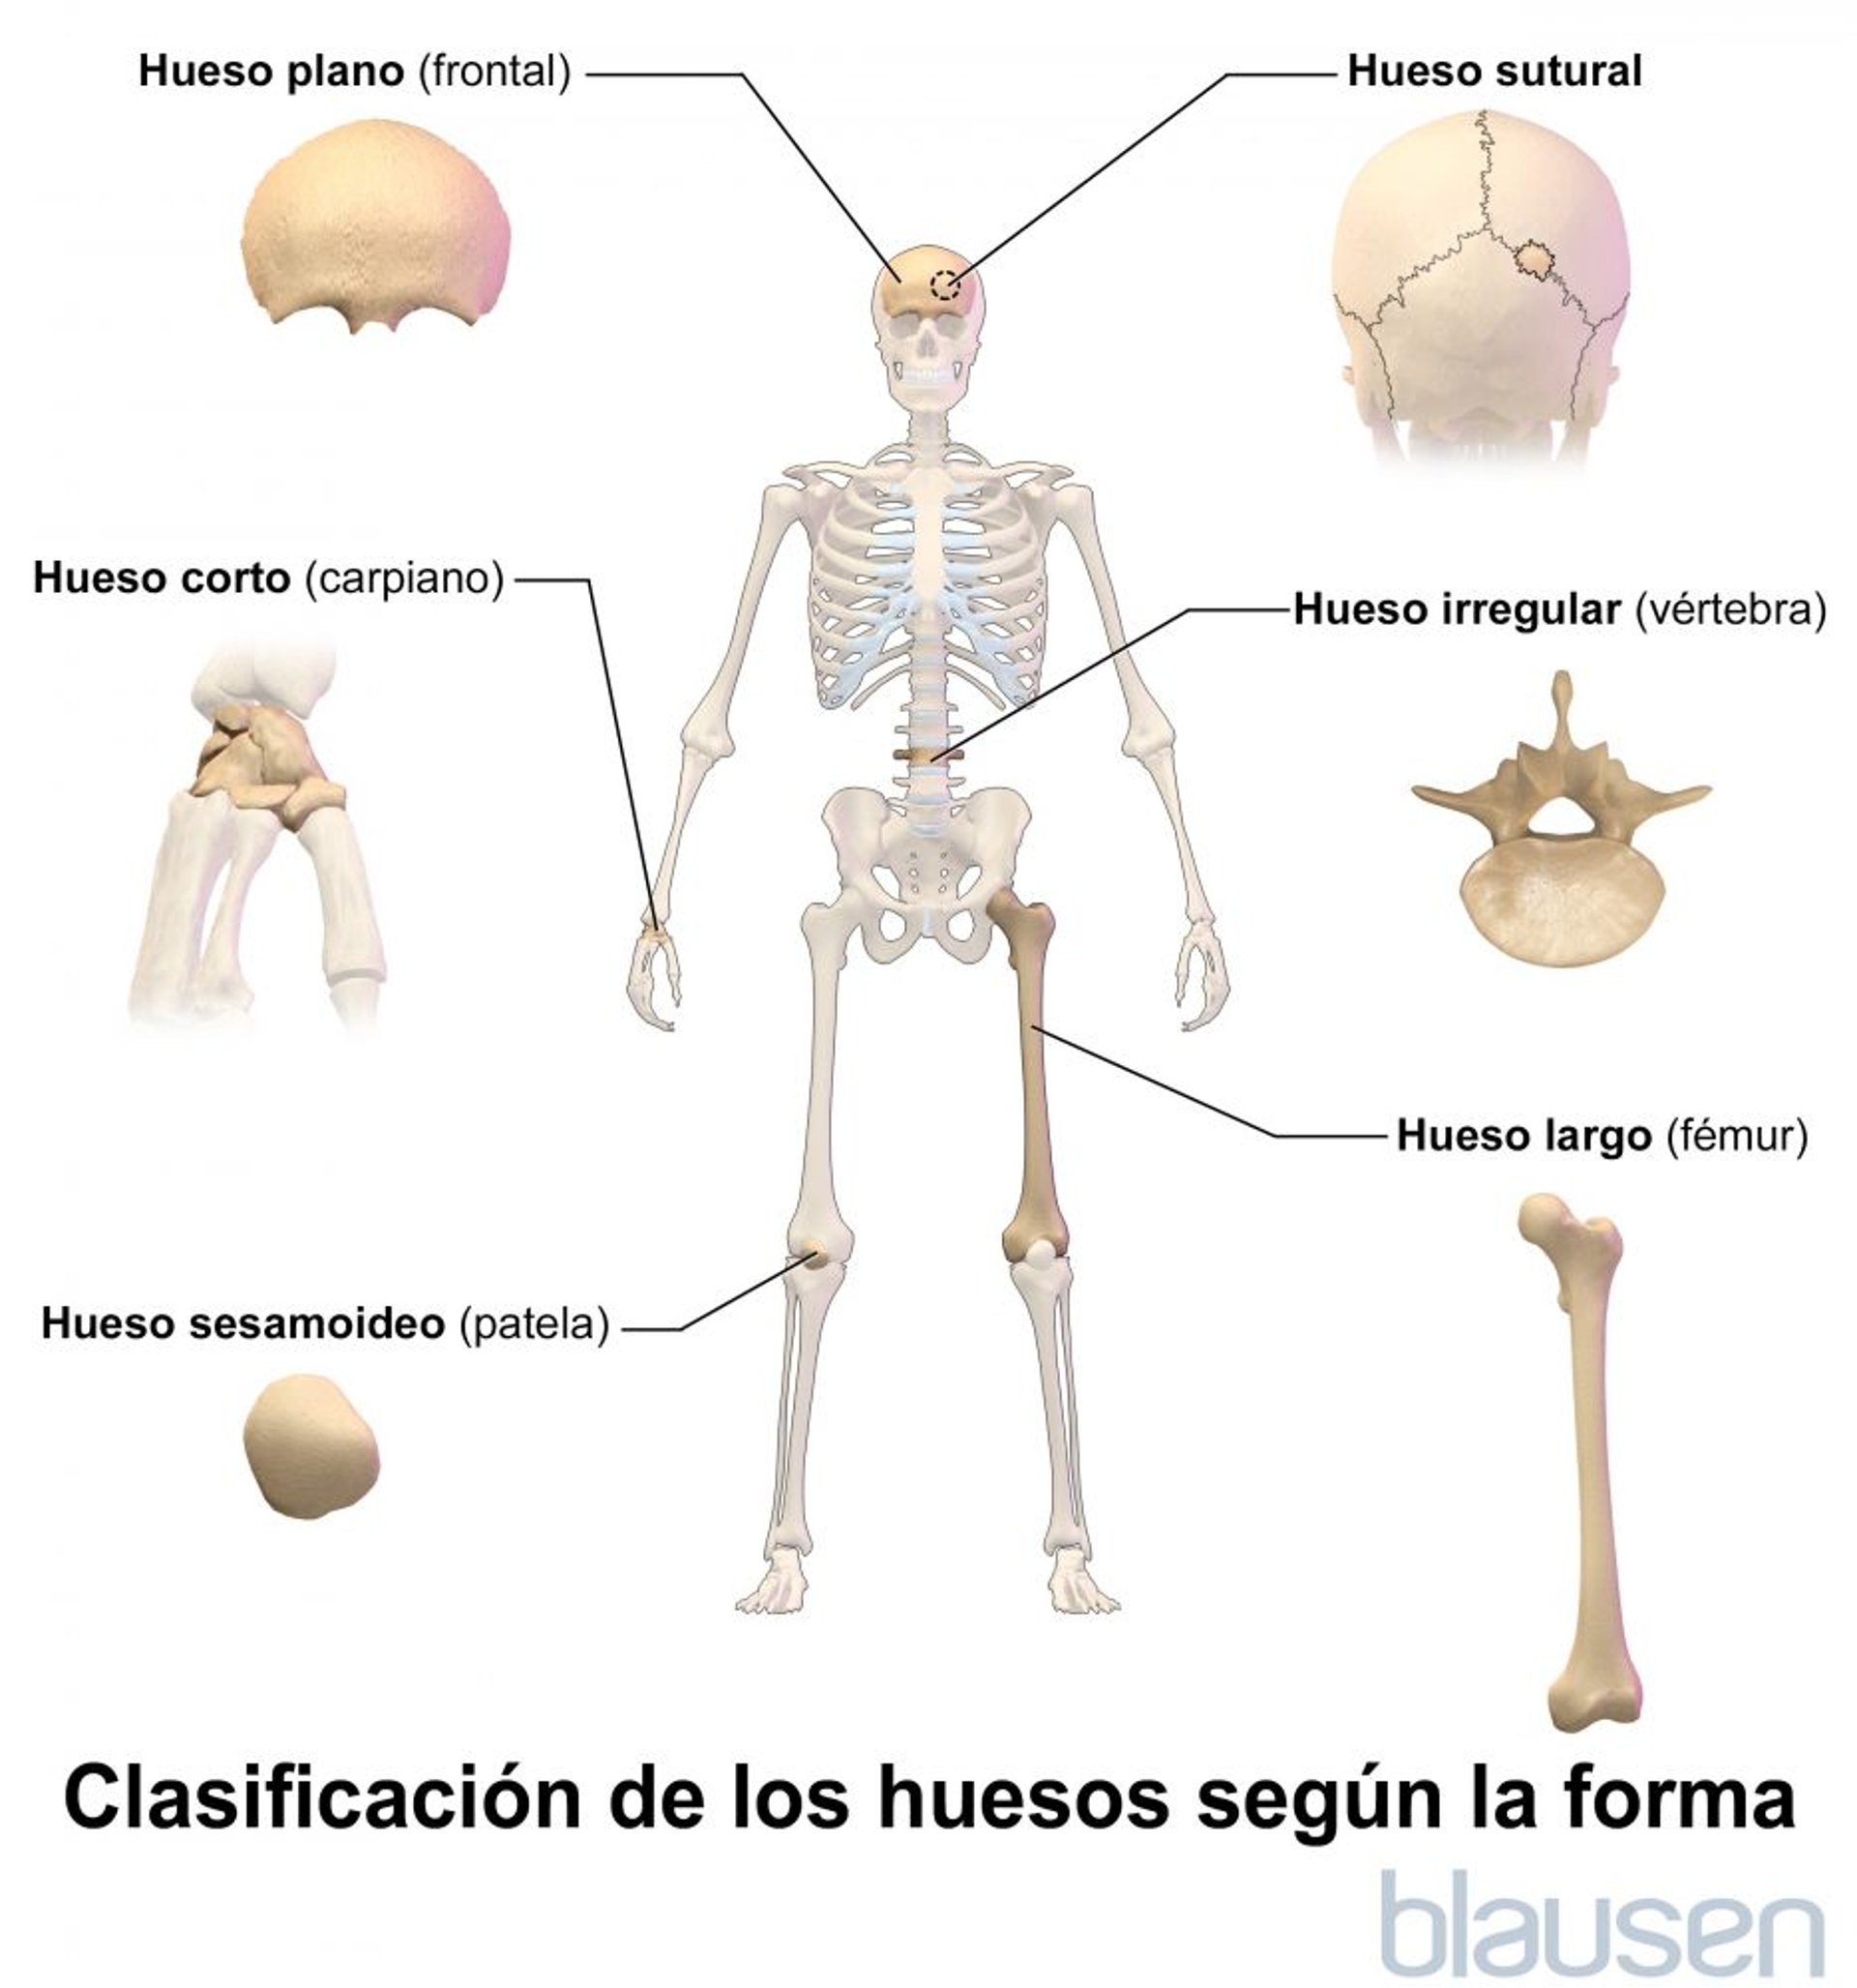 Clasificación de los huesos según su forma